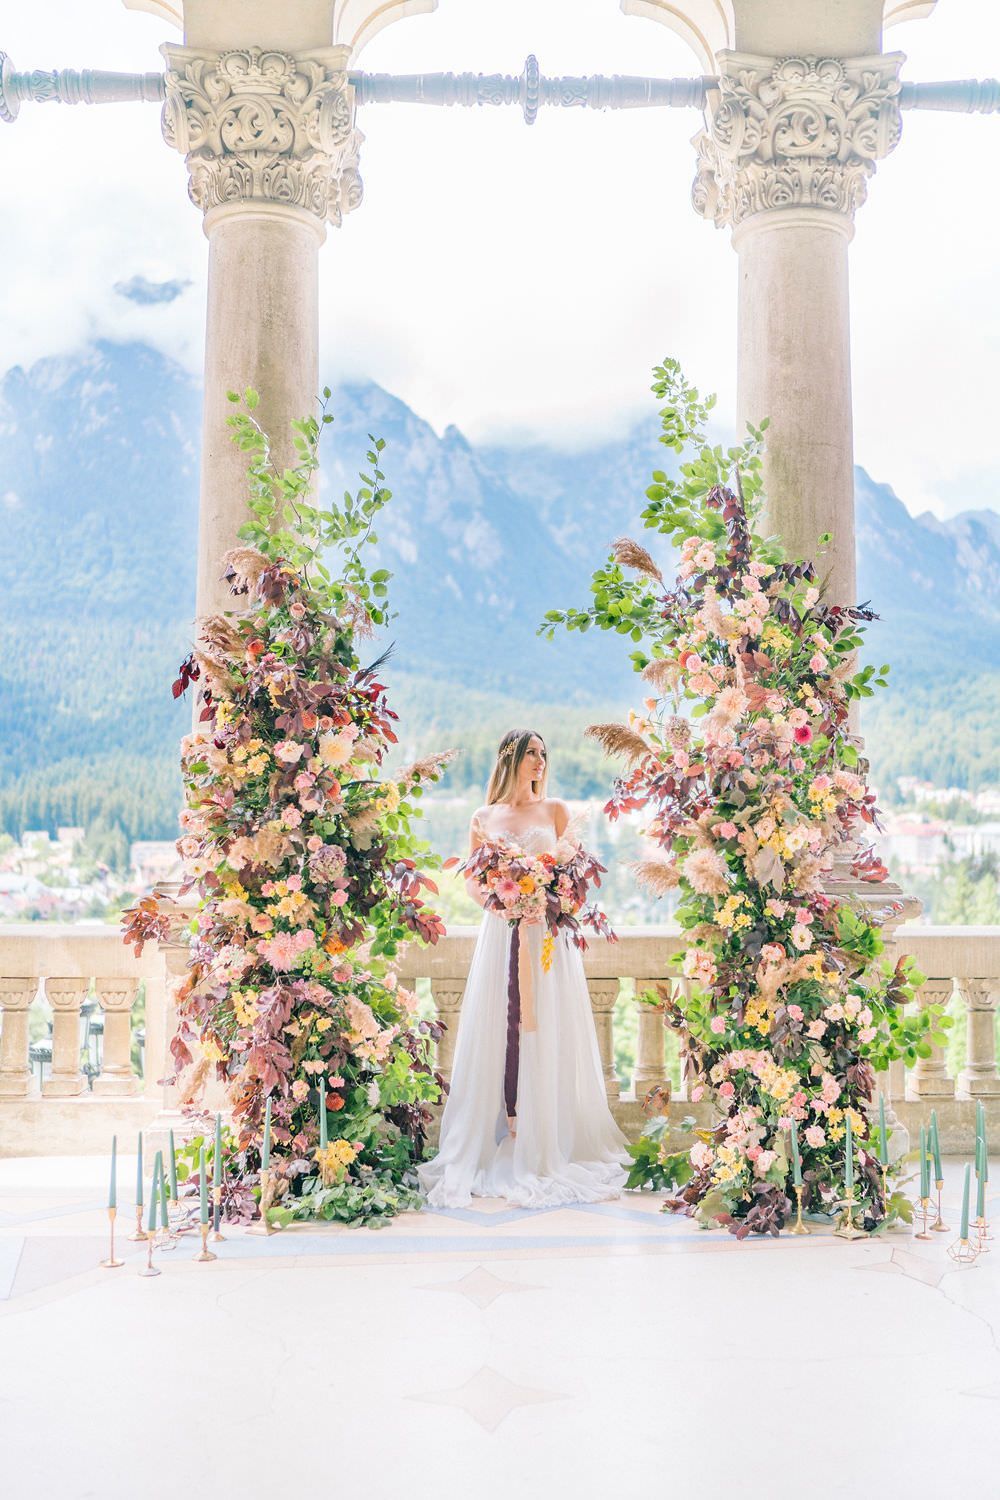 An Autumn Fairytale Wedding at Cantacuzino Castle ? Ruffled -   14 fairytale wedding Inspiration ideas